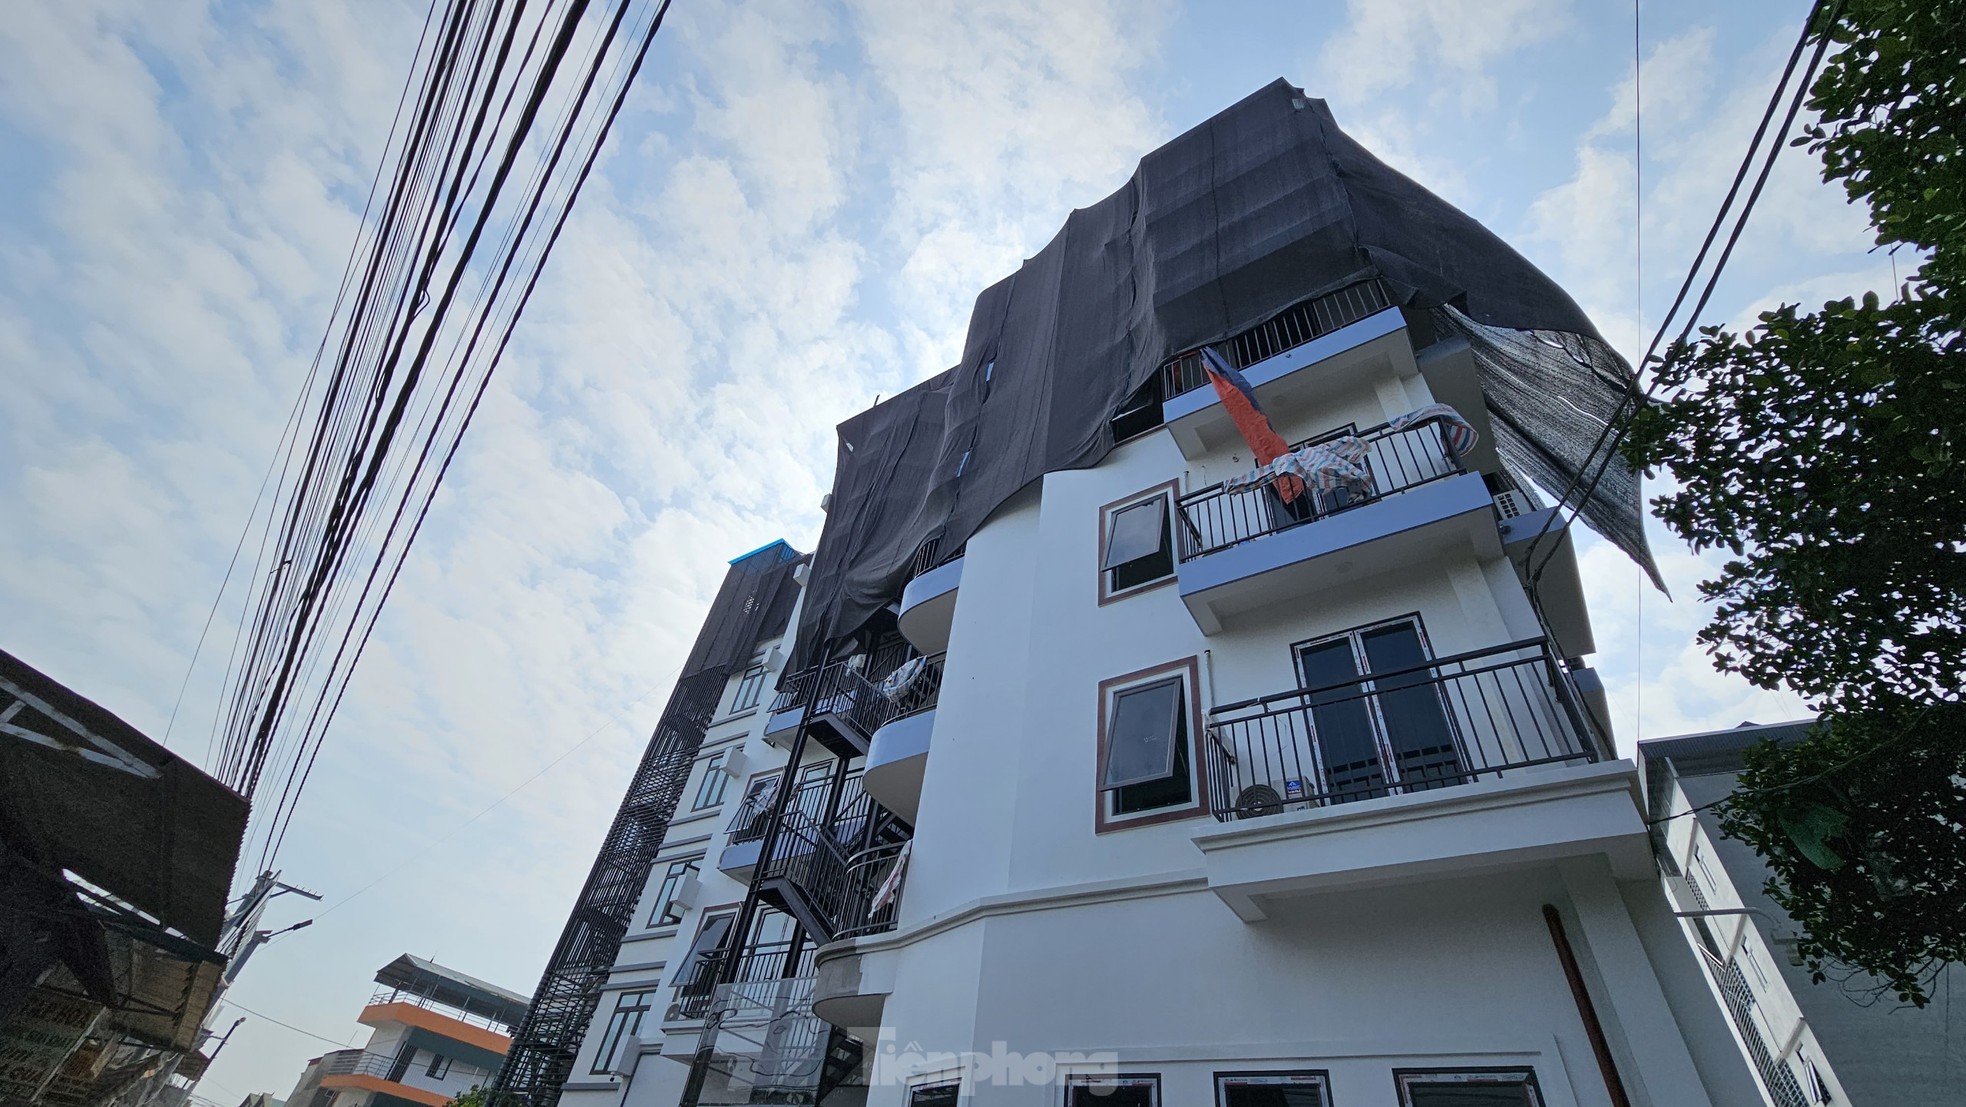 Thủ phủ chung cư mini sai phép ngoại thành Hà Nội bất ngờ 'trùm mền' - Ảnh 8.